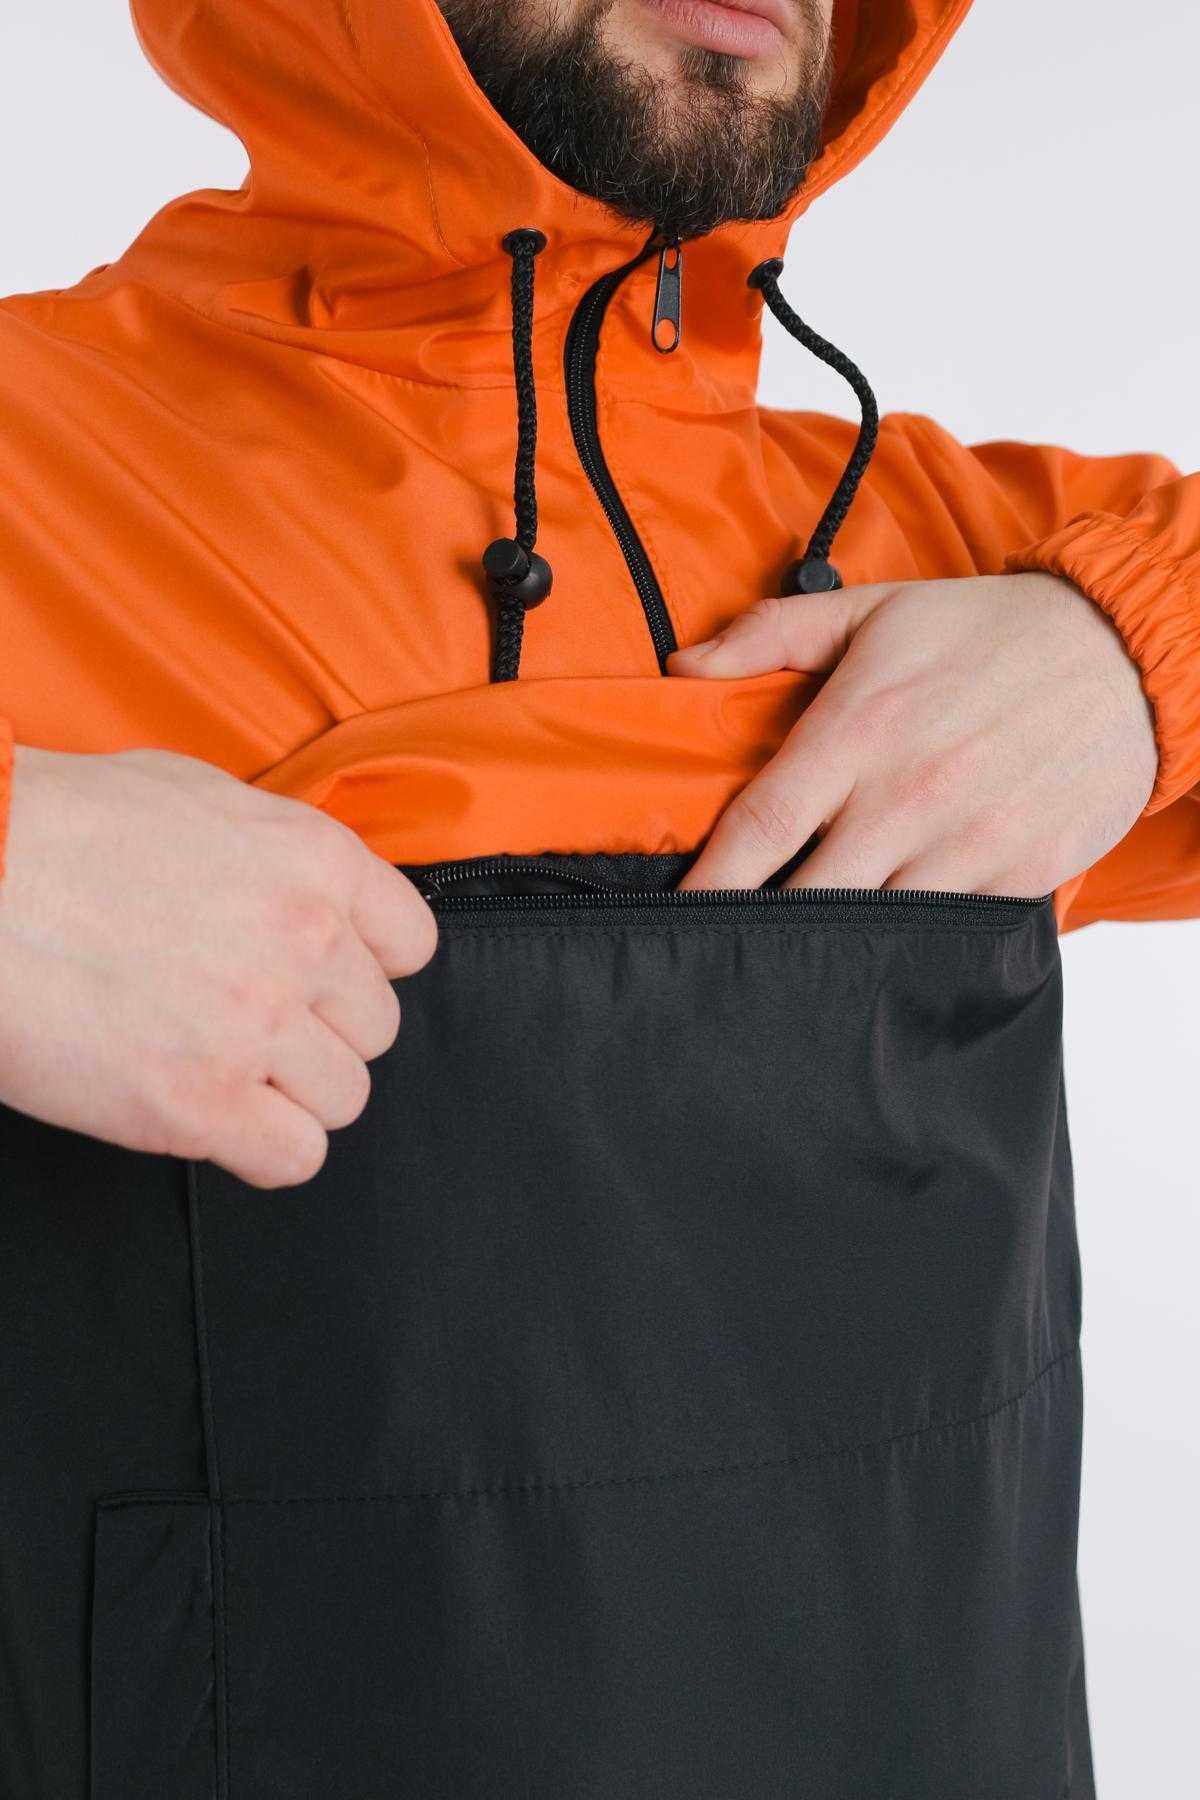 Анорак чоловічий Nike, помаранчево-чорний анорак найк, куртка, nike